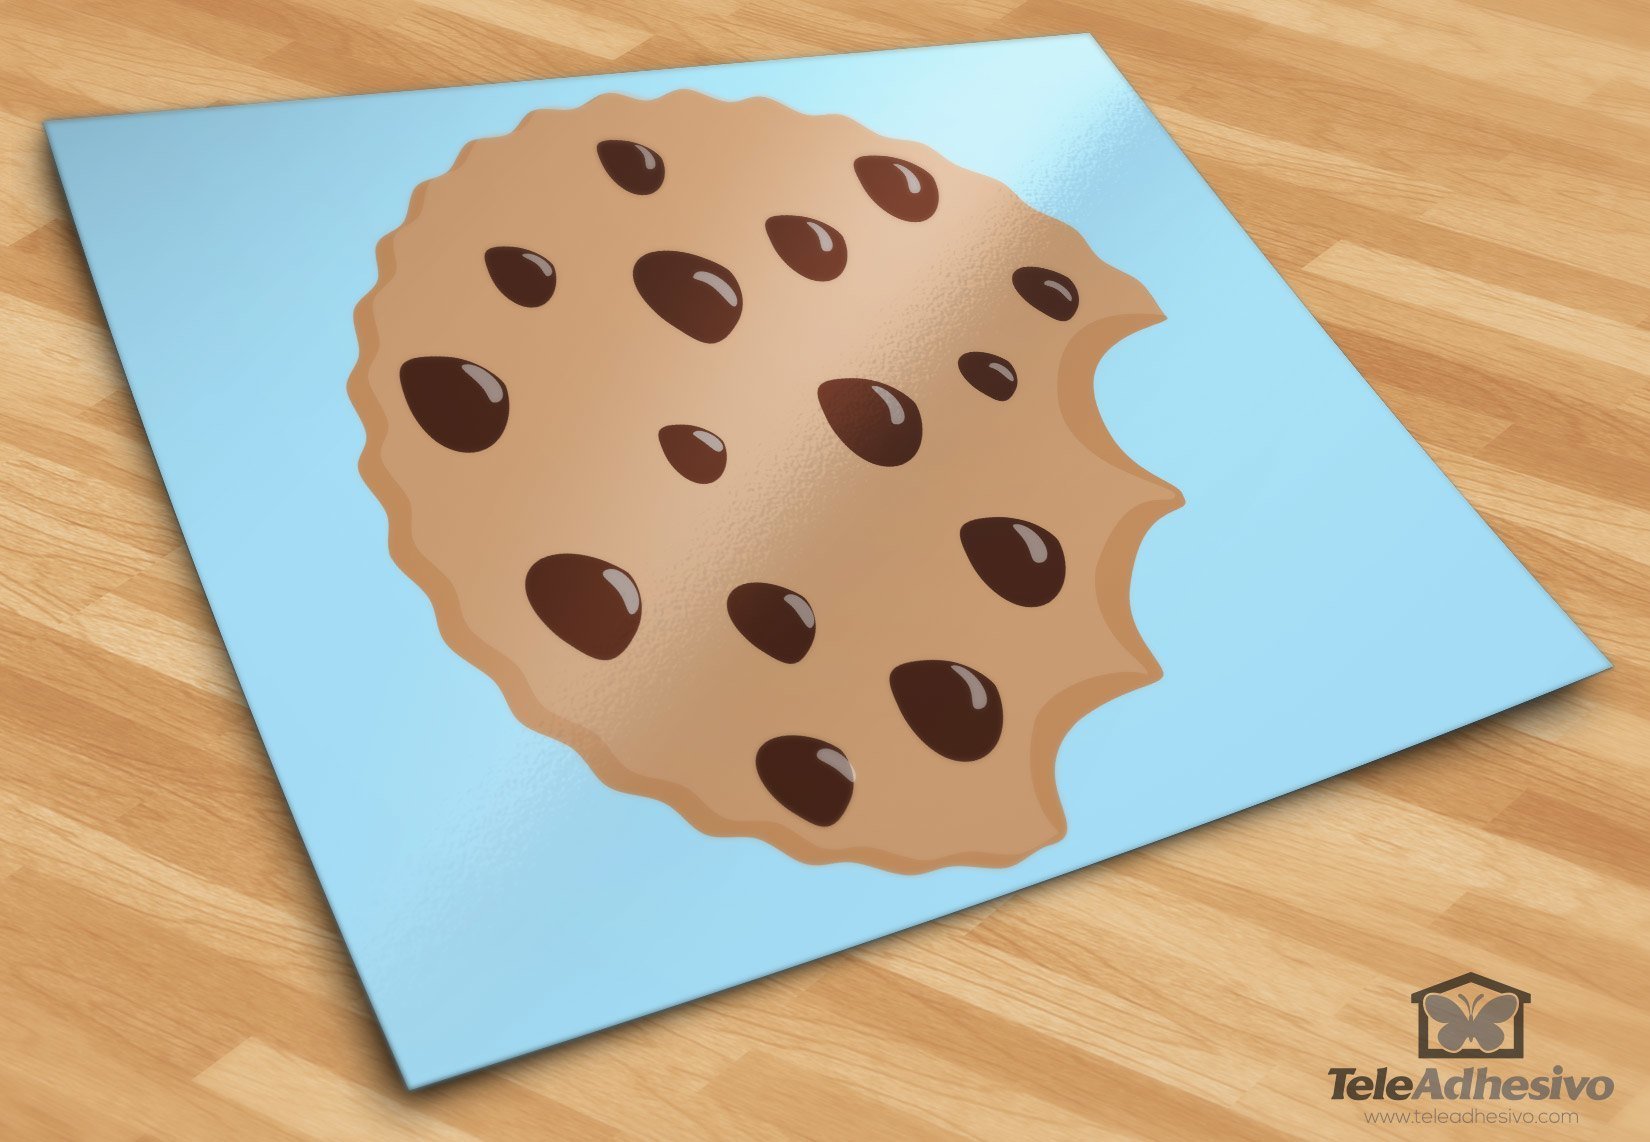 Stickers pour enfants: Cookie